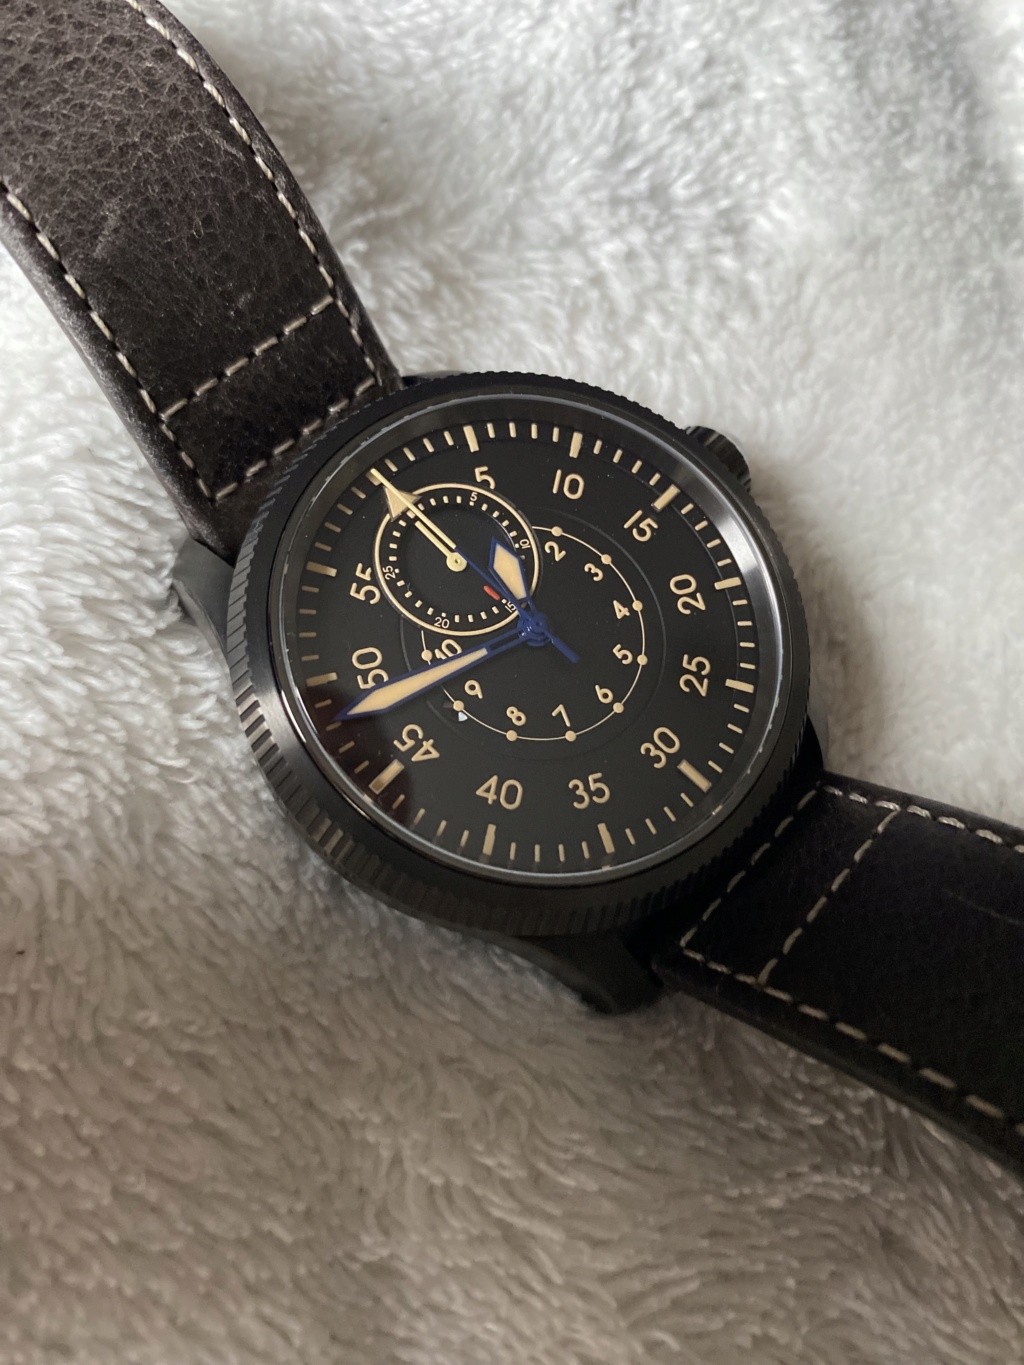 [Vends] Flieger Type B Watch Angels - Chrono Mono-poussoir COSC B-uhr-11